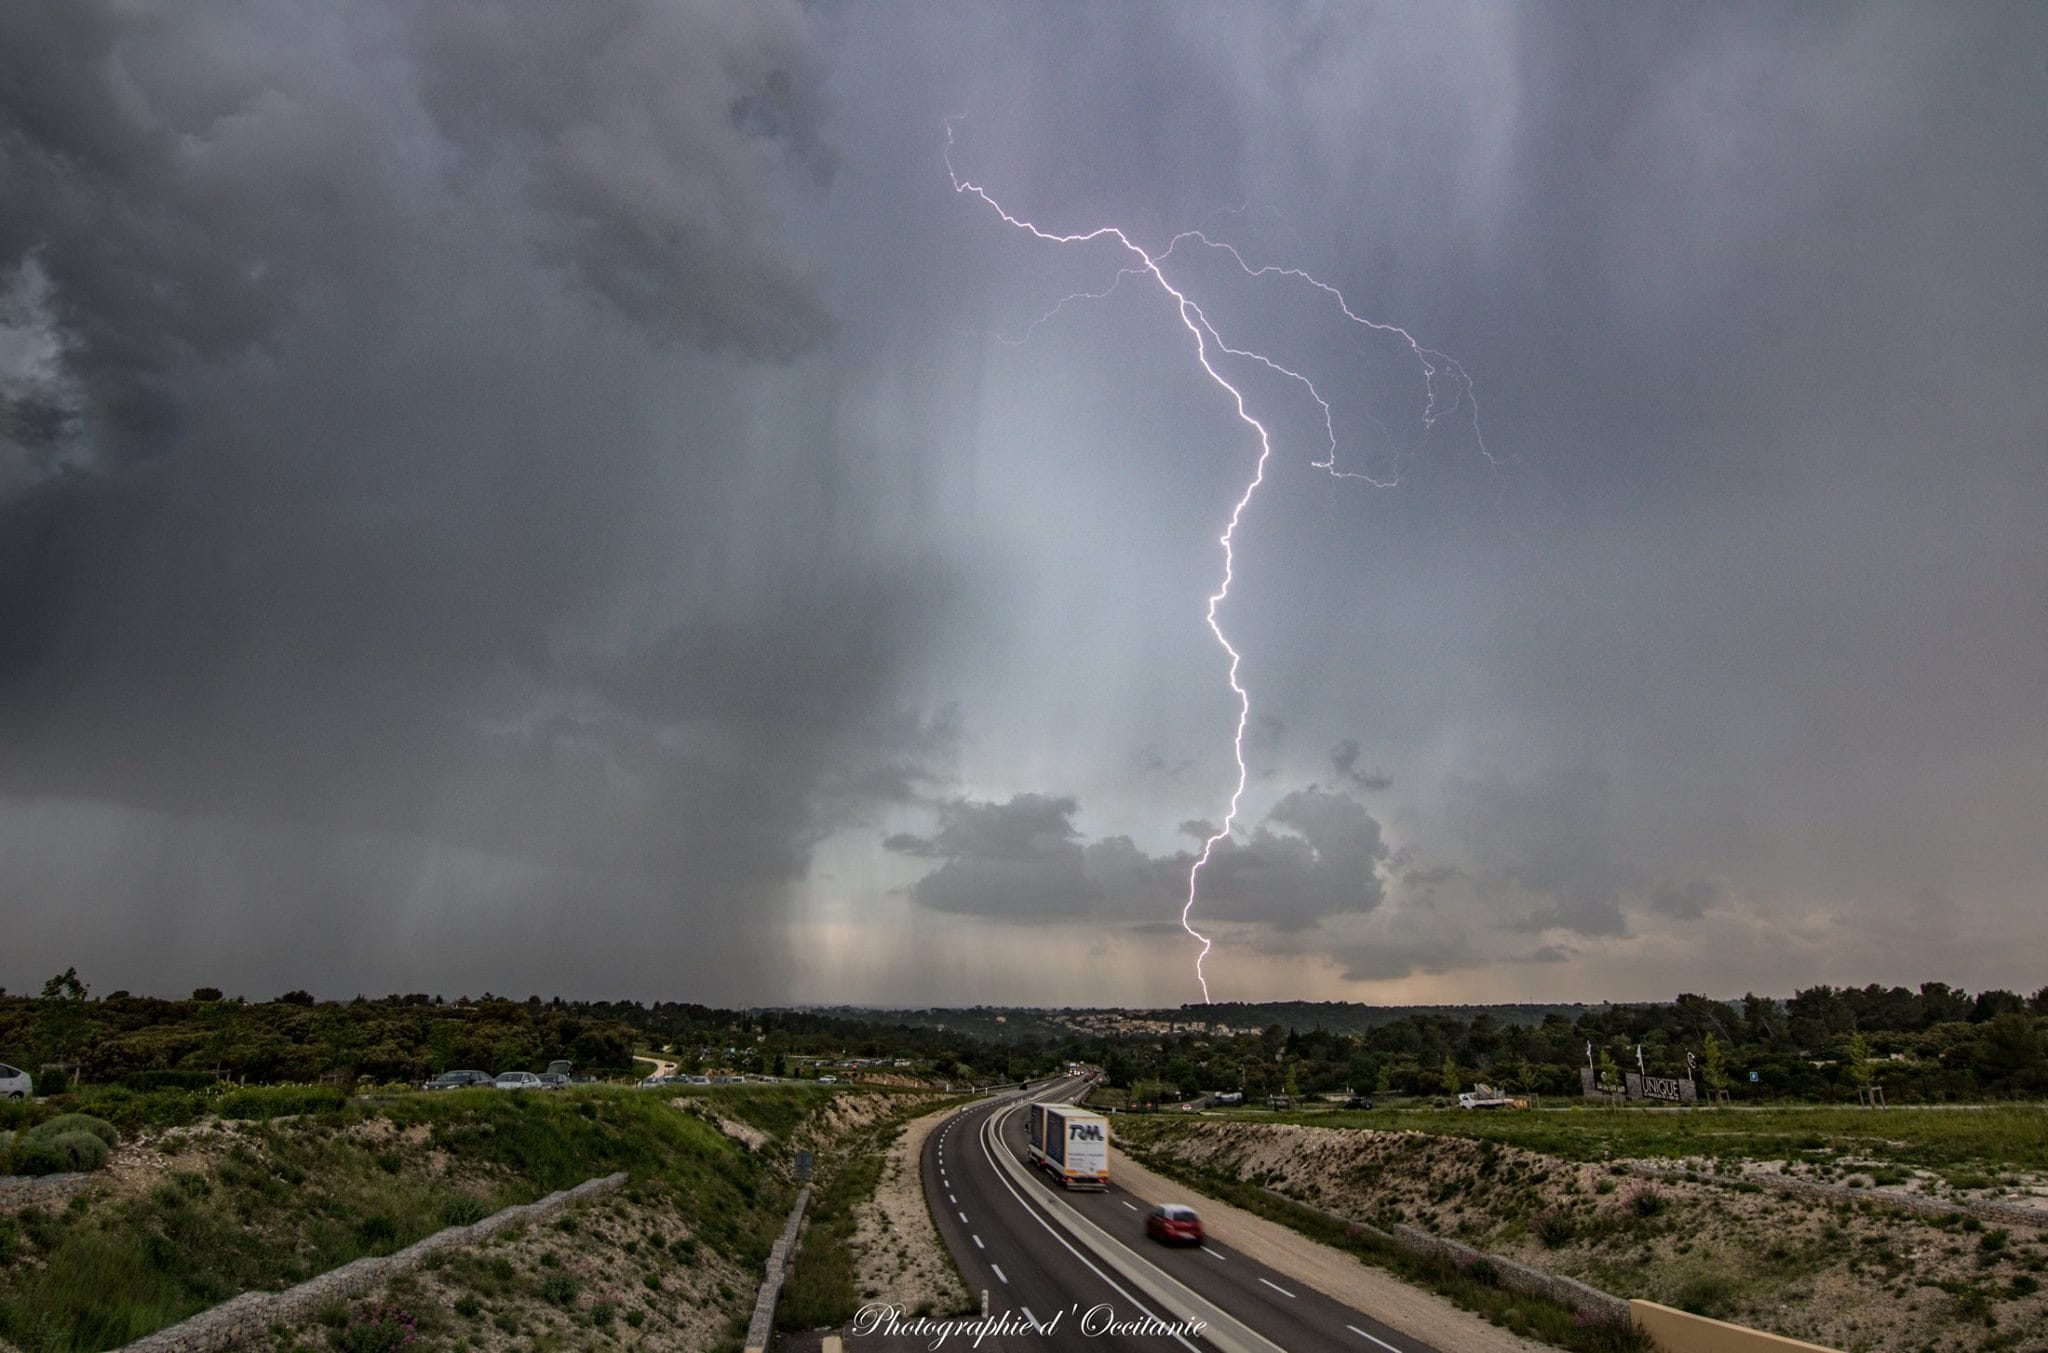 Jolie cellule orageuse sur le Gard, impact ramifié sur le Nîmois - 08/05/2018 19:00 - Photographie d'Occitanie